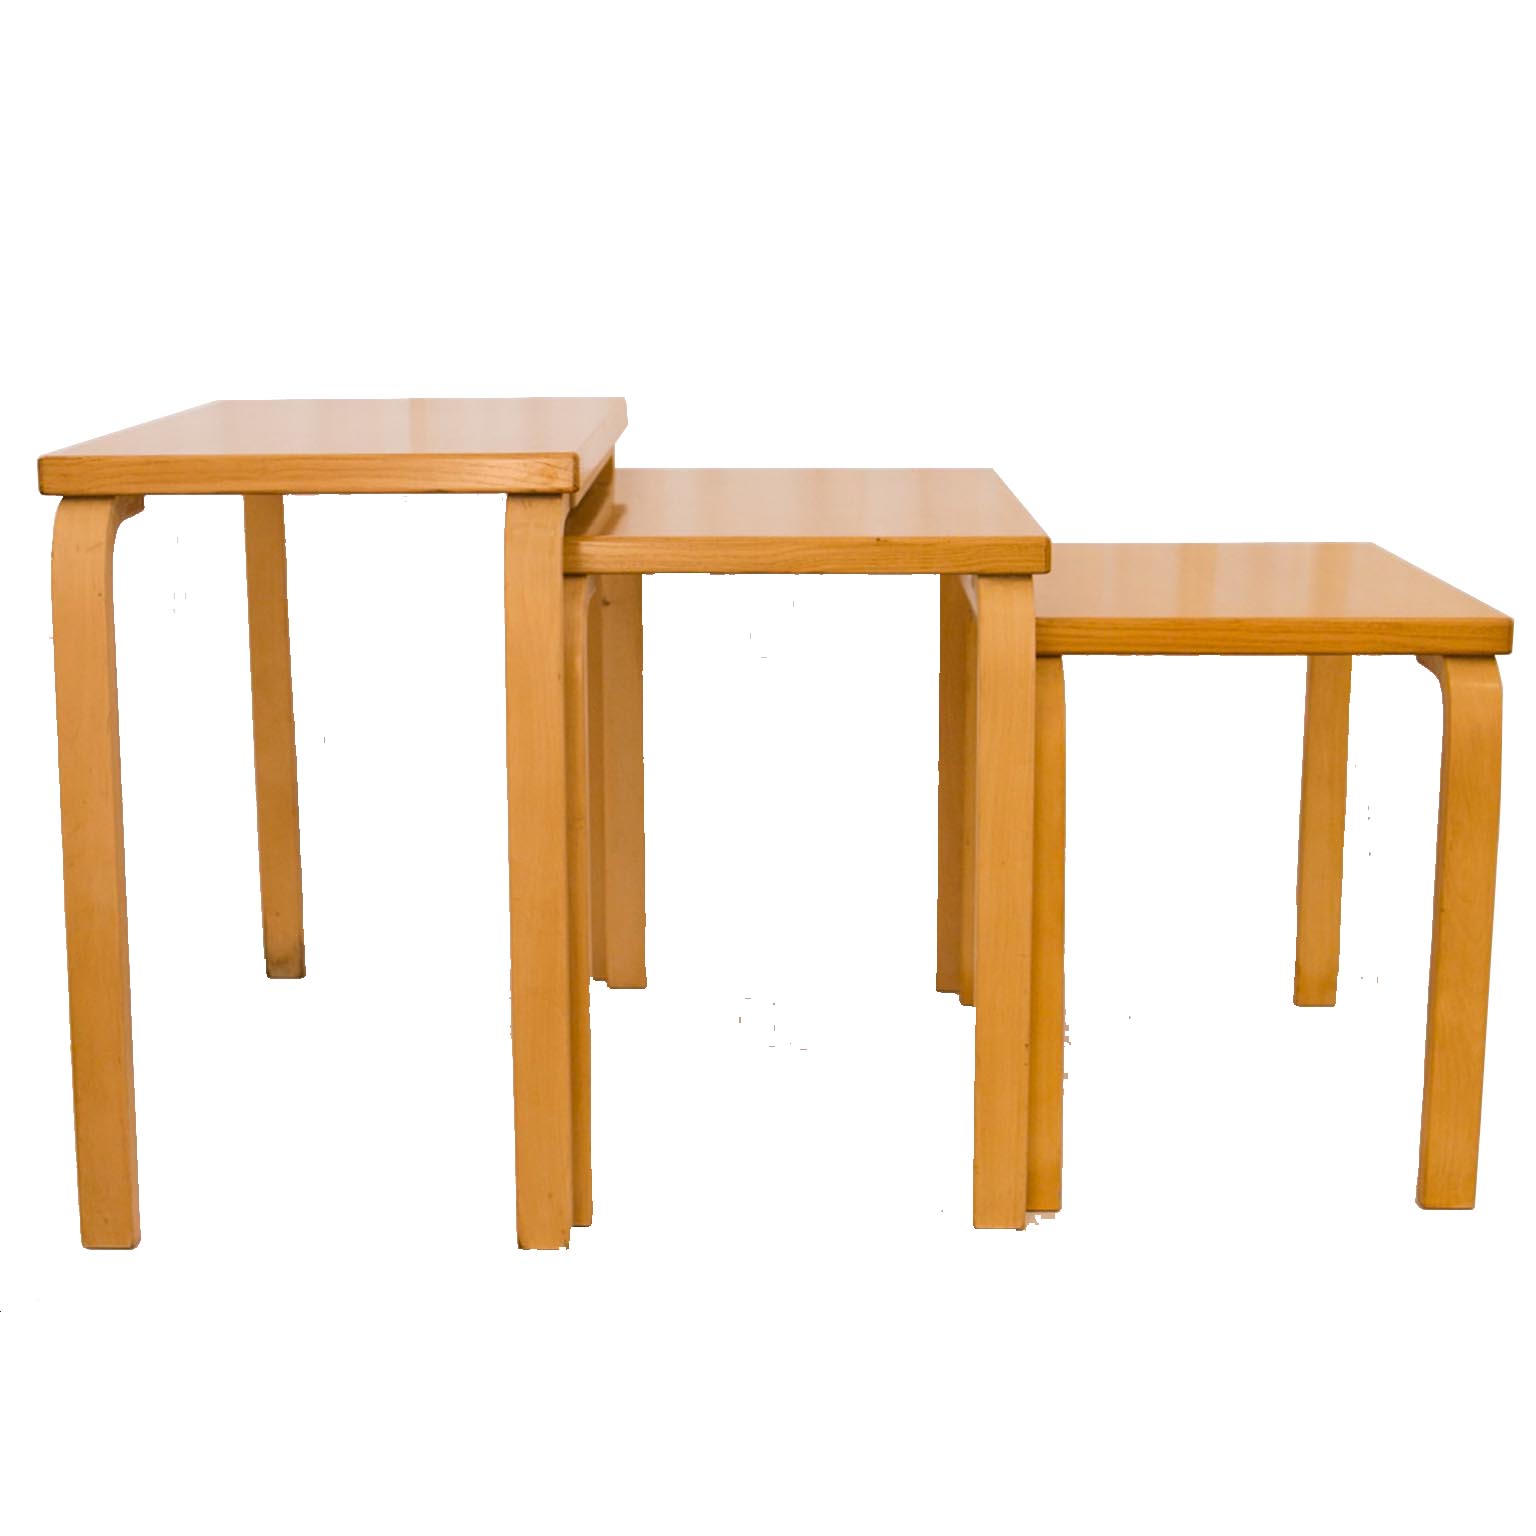 Nesting Tables by Alvar Aalto for Artek